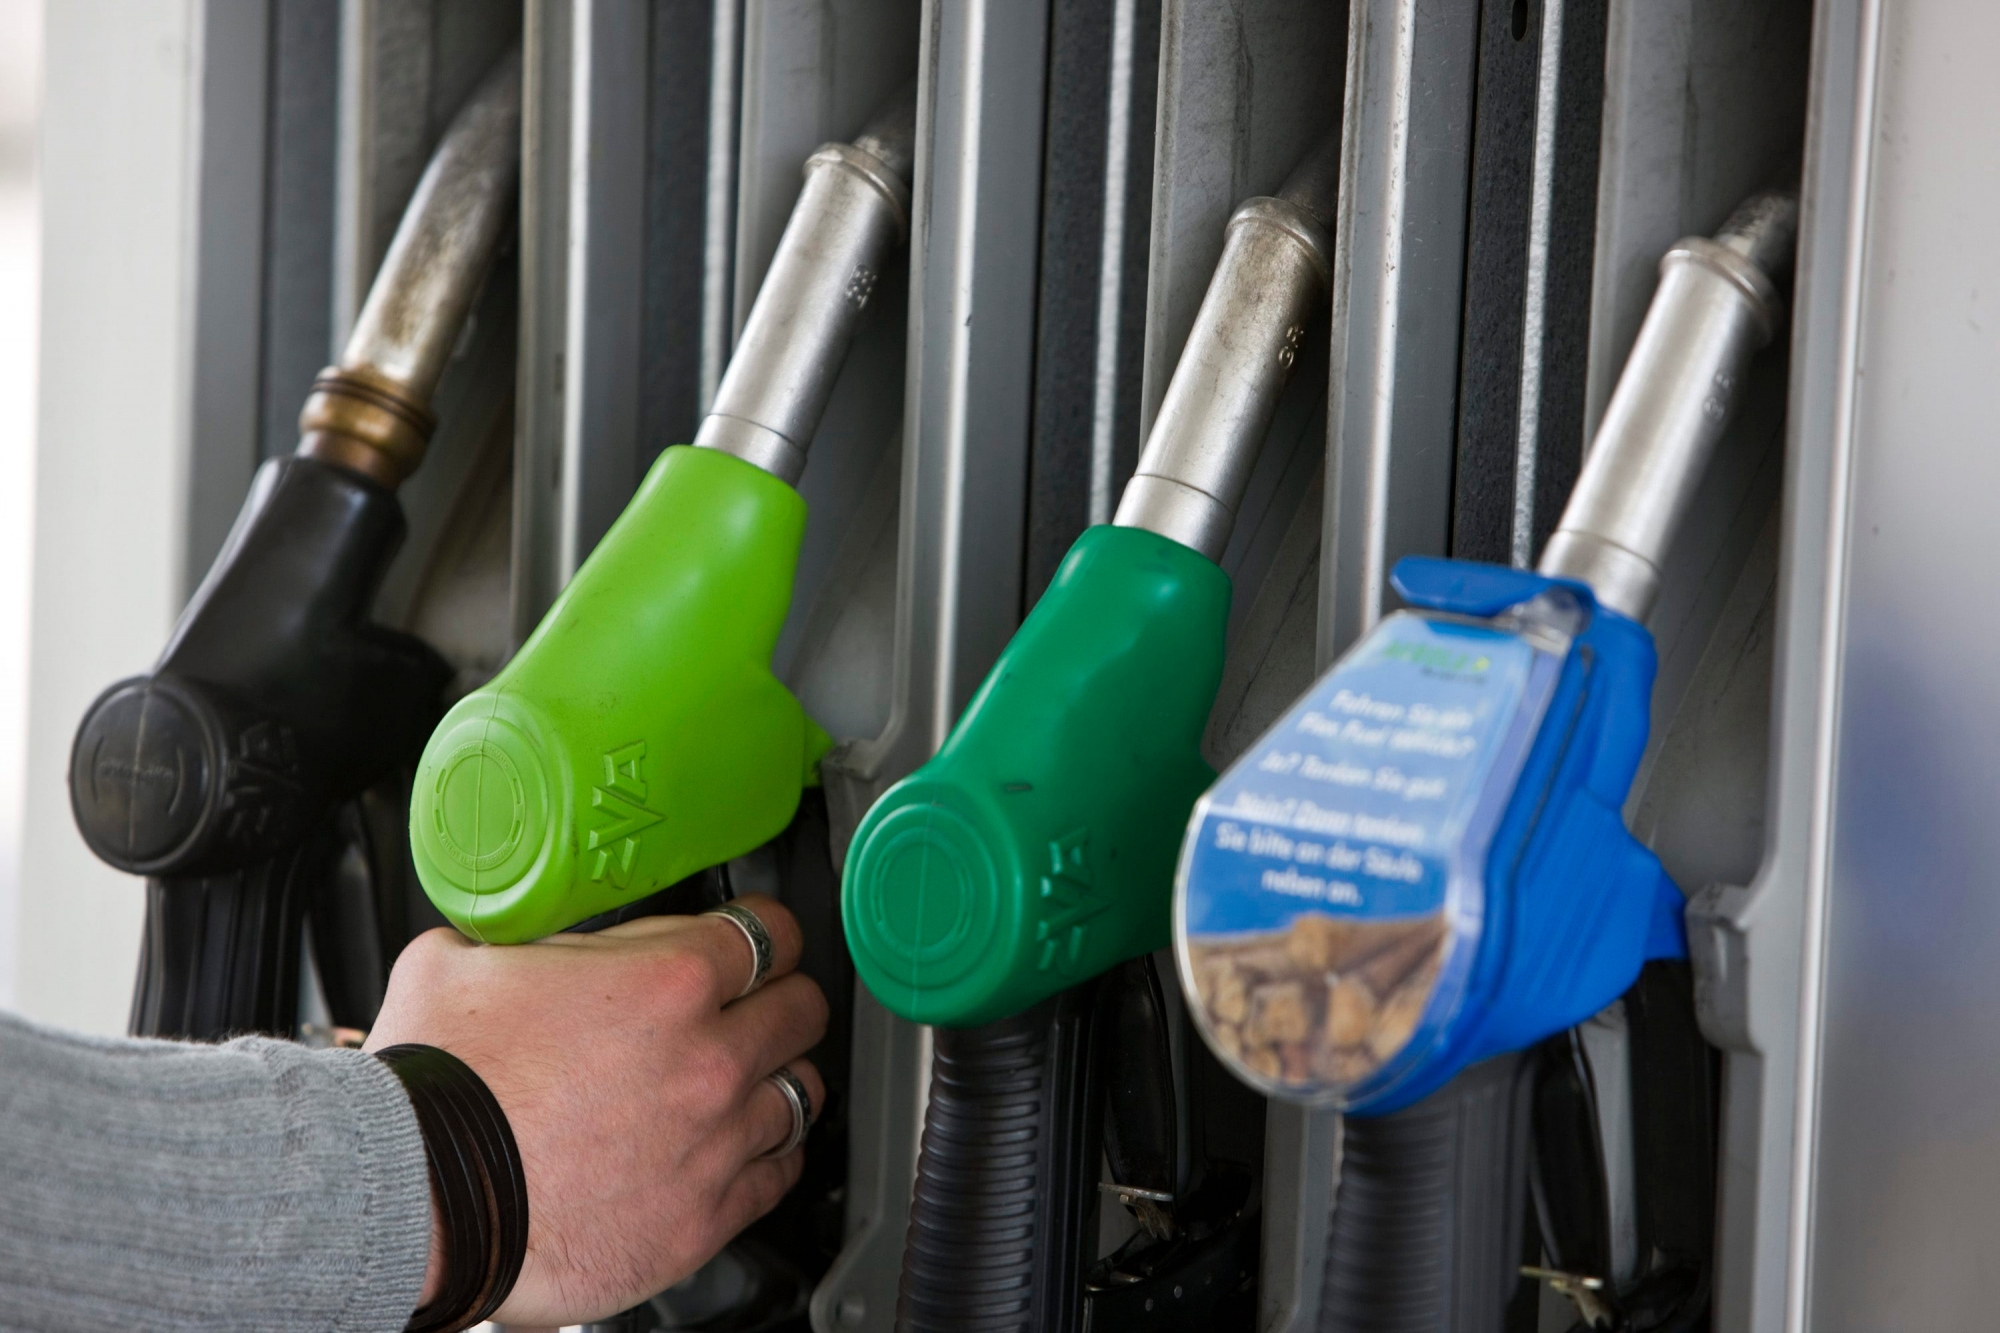 ARCHIV --- Ein Kunde greift am 25. April 2008 an der Agrola-Tankstelle in Regensdorf, Schweiz, nach dem Hahn mit Bleifrei 98-Benzin. Rechts ein Zapfhan mit E85, einer Mischung aus 85% Ethanol aus Biomasse und 15% Bleifrei 95. - Das Inflationsproblem der Schweiz verschaerft sich, wie das Bundesamt fuer Statistik am Donnerstag, 31. Juli 2008 mitteilte. Zwar sind die Preise im Juli gegenueber dem Juni leicht gesunken. Trotzdem kletterte die Jahresteuerung auf 3,1 Prozent. Bei den einzelnen Guetern fallen vor allem die Preissteigerungen bei der Energie ins Gewicht. Gegenueber dem Vormonat verteuerte sich das Heizoel um 2,8 Prozent und auch die Autofahrer mussten im Juli fuer Benzin nochmals 1,8 Prozent mehr bezahlen. Wegen dem Sommerausverkauf sanken hingegen die Preise fuer Bekleidung und Schuhe um 12,3 Prozent. Preisabschlaege gab es ausserdem bei Computerbildschirmen, und Fernsehgeraeten. (KEYSTONE/Martin Ruetschi)


 SCHWEIZ TEUERUNG JULI 2008